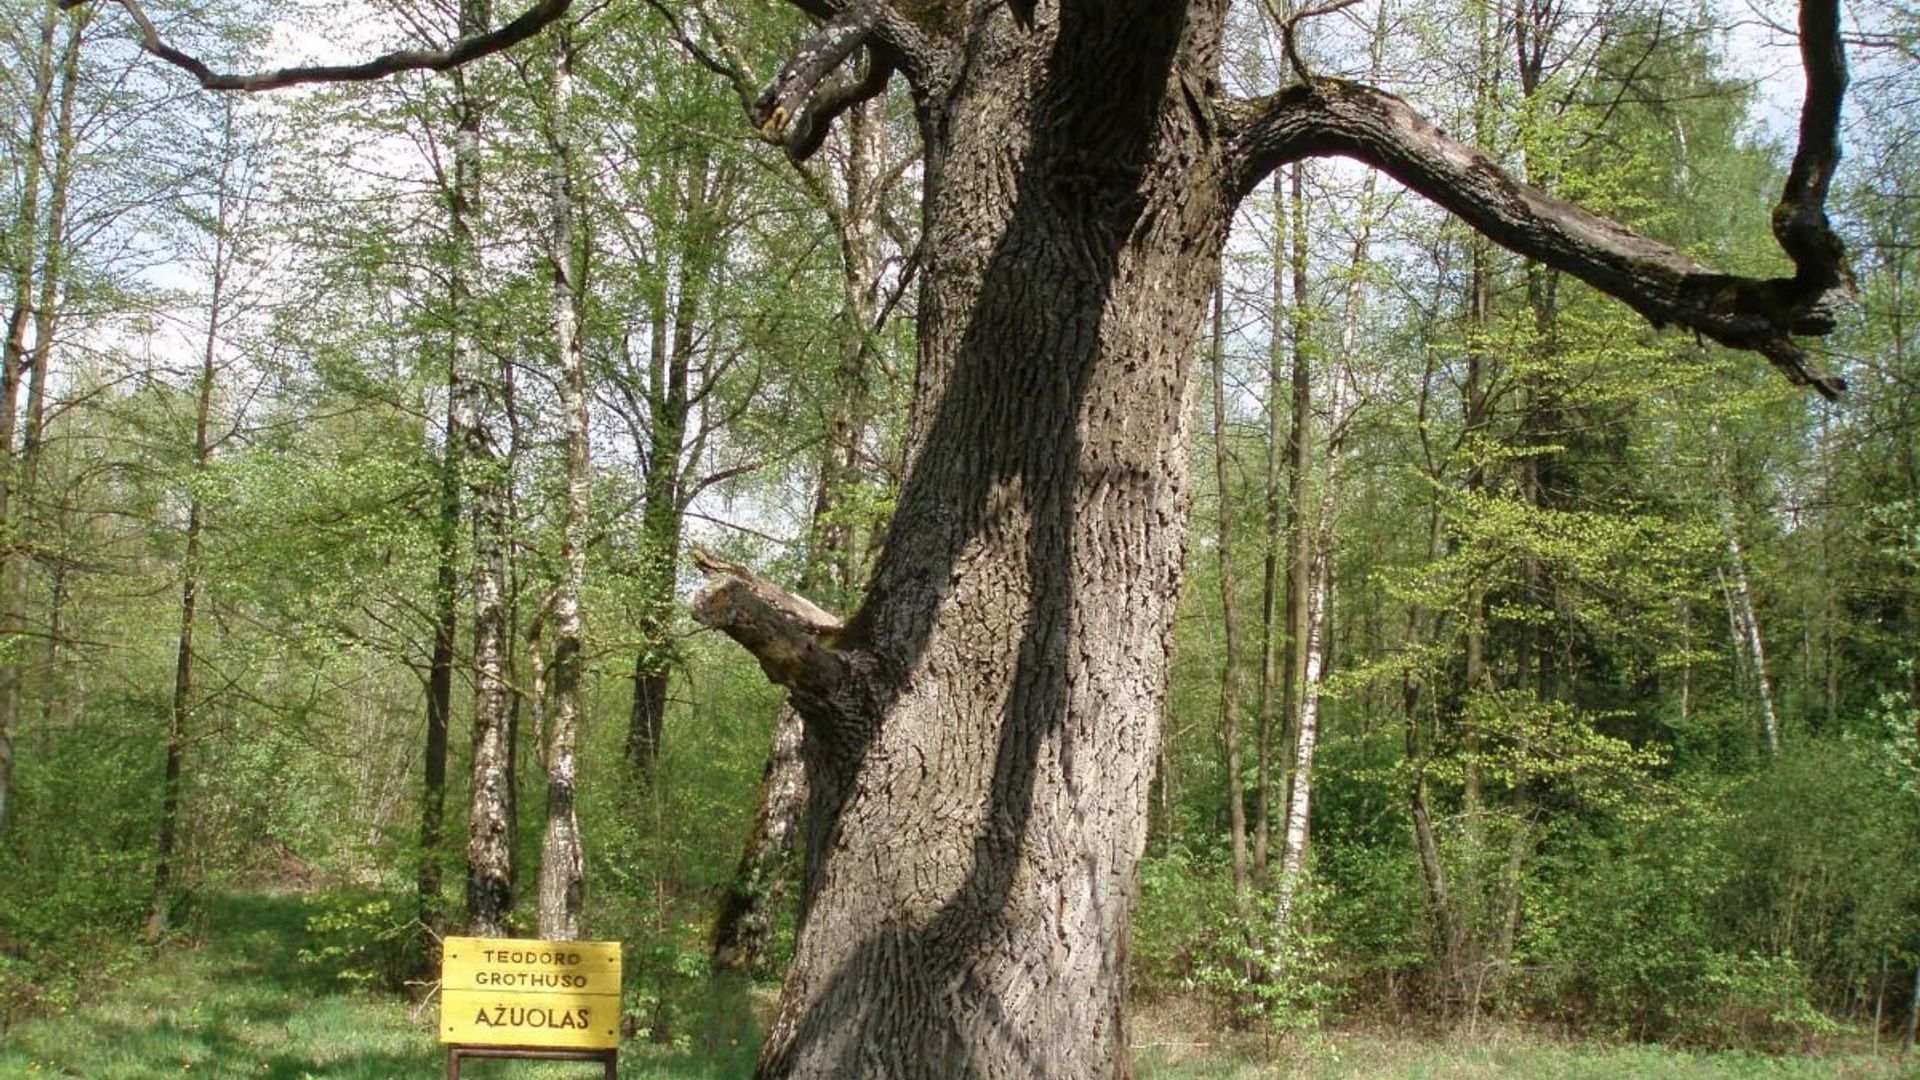 Theodor Grotthuss Oak